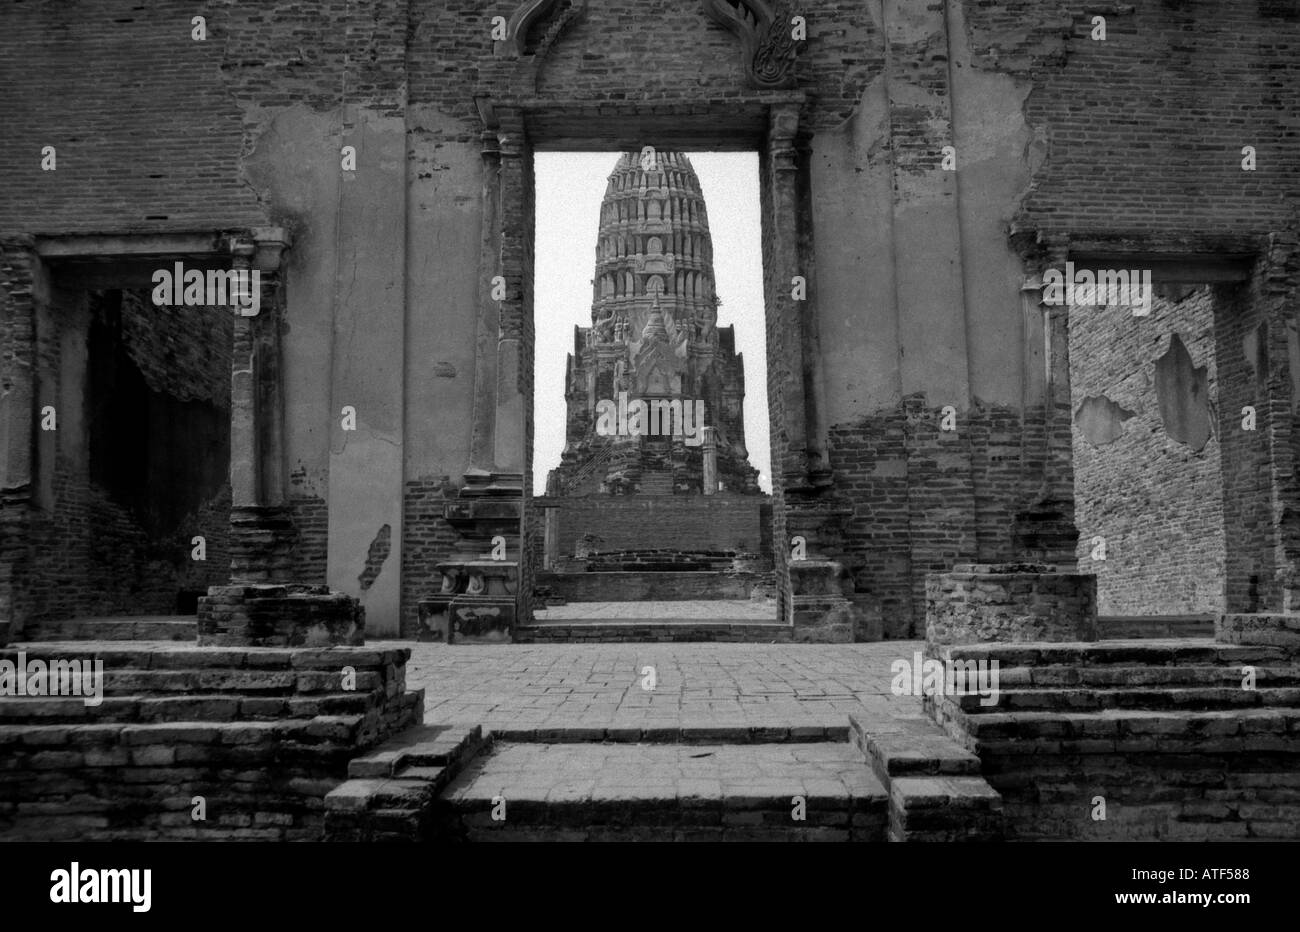 Plusieurs Triple entrée symétrique à l'énorme brique ancienne haute magnifique temple hindou a Ayuthaya Thaïlande Asie du sud-est Banque D'Images